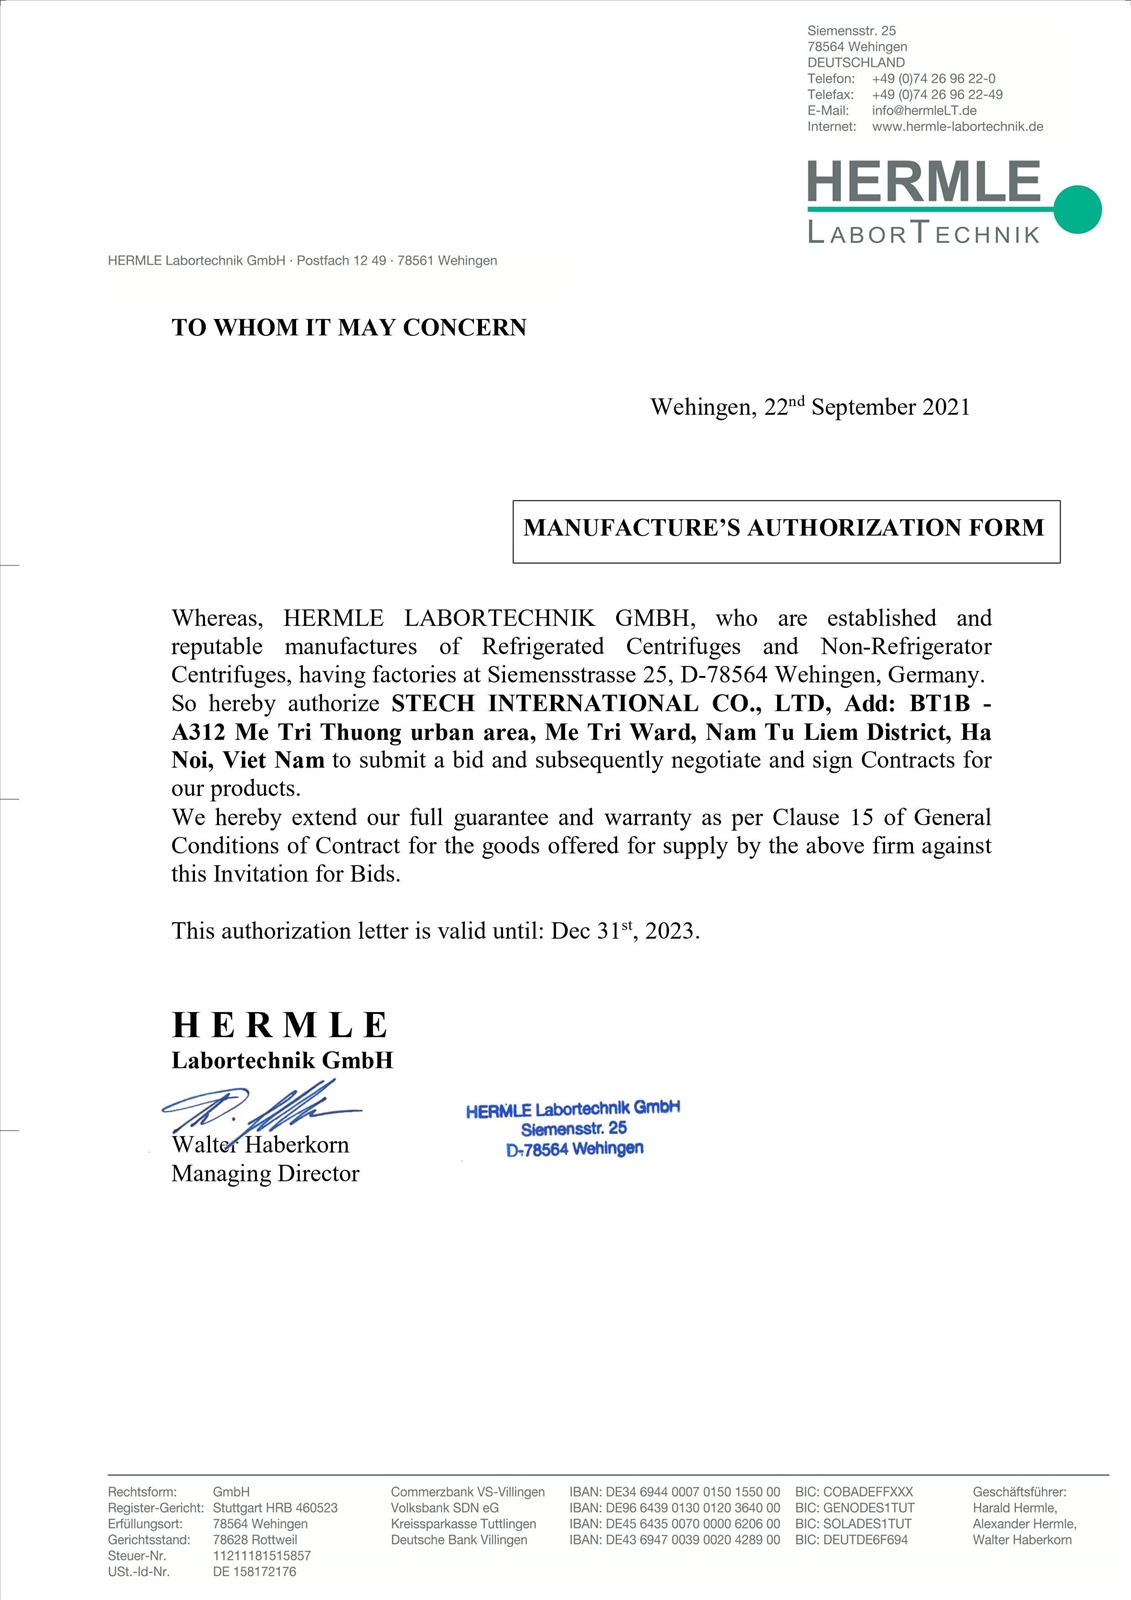 ủy quyền của hãng Hermle cho Stech cung cấp máy li tâm tại Việt Nam